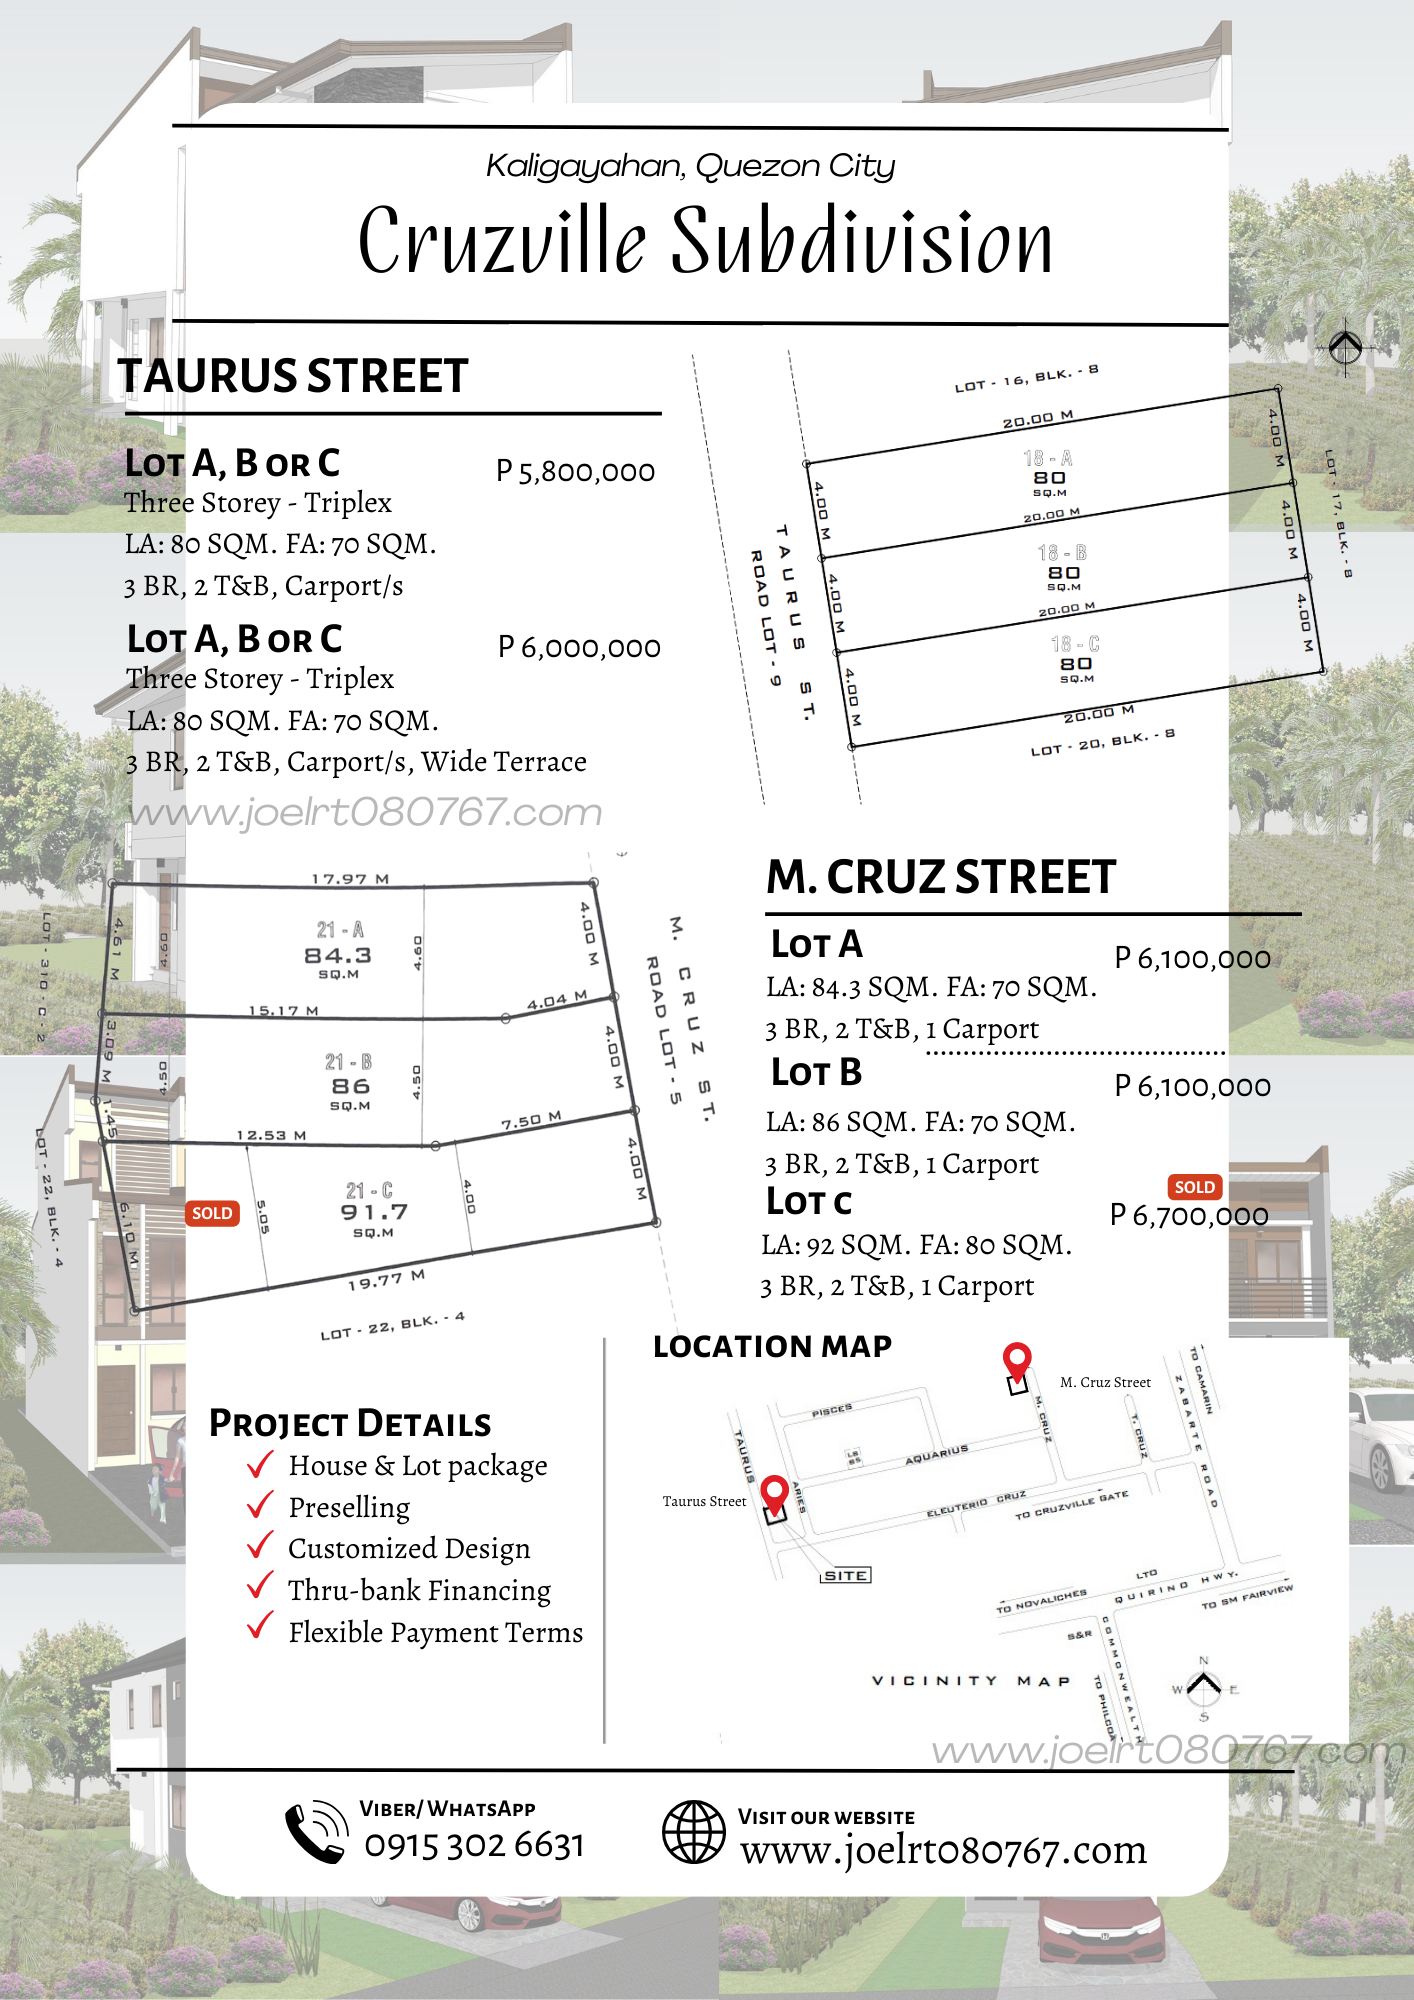 Taurus and M. Cruz Street